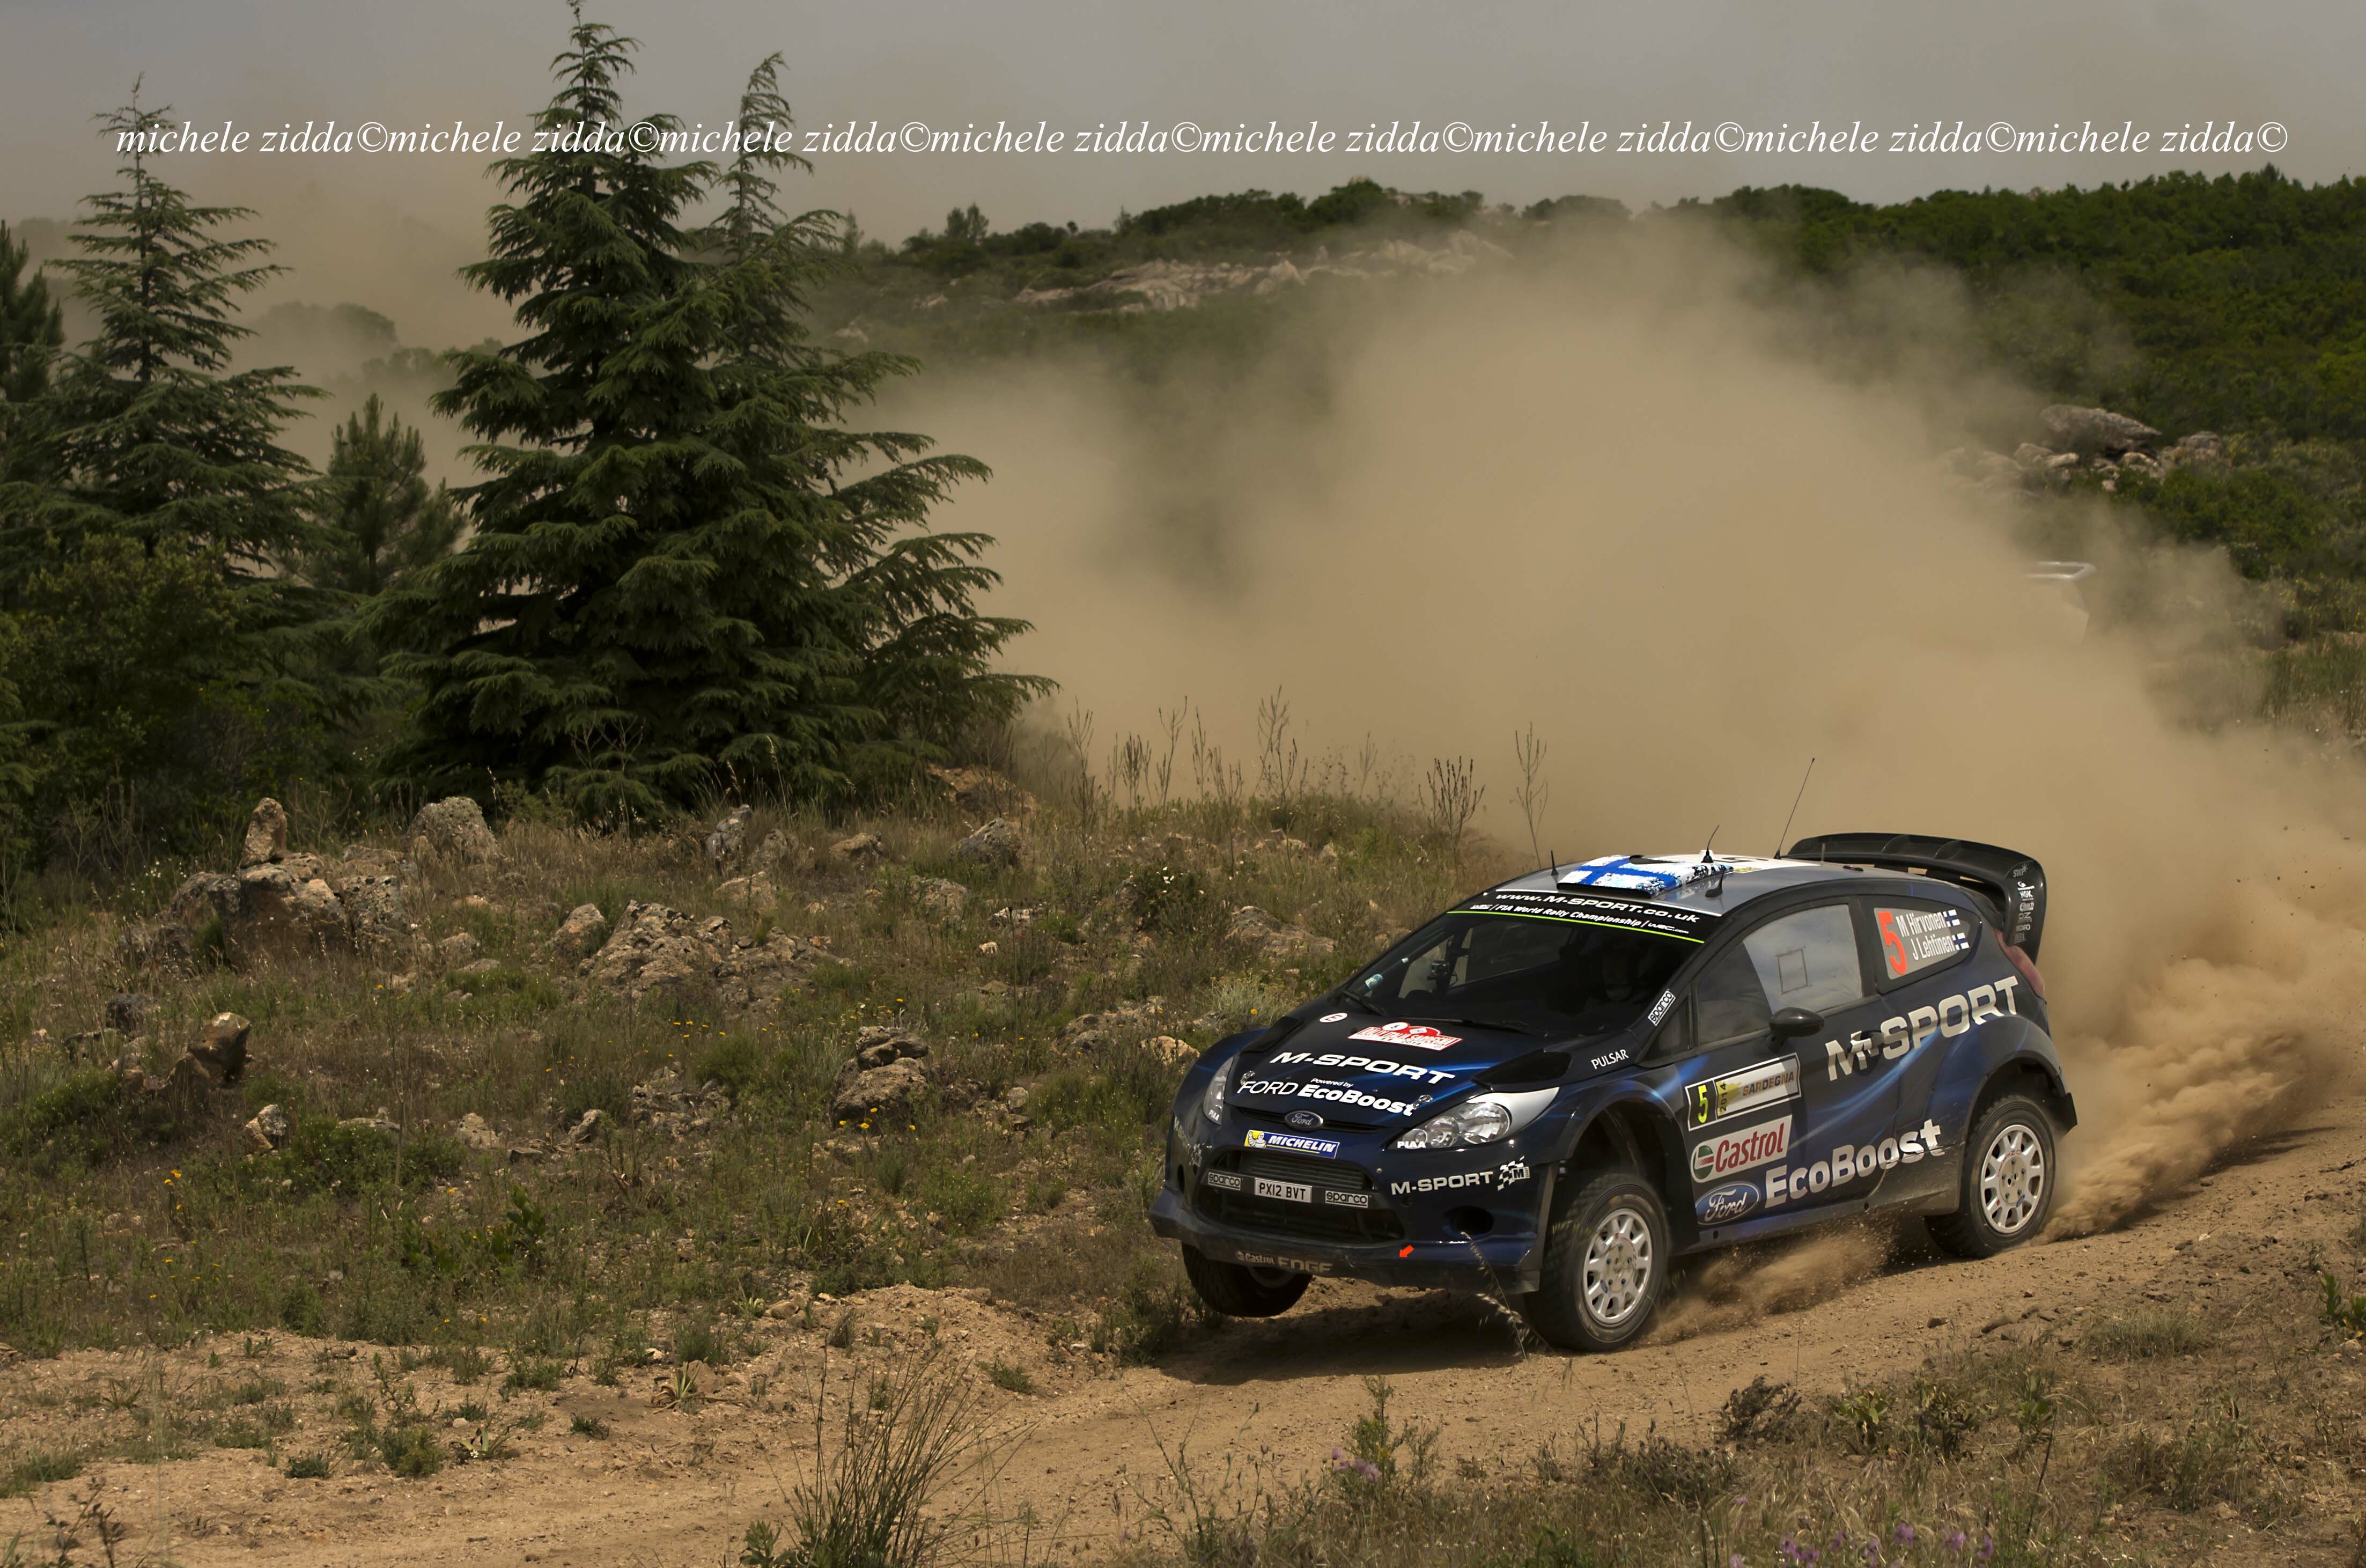 Una delle Ford Fiesta WRC impegnata negli sterrati sardi (foto: Michele Zidda)